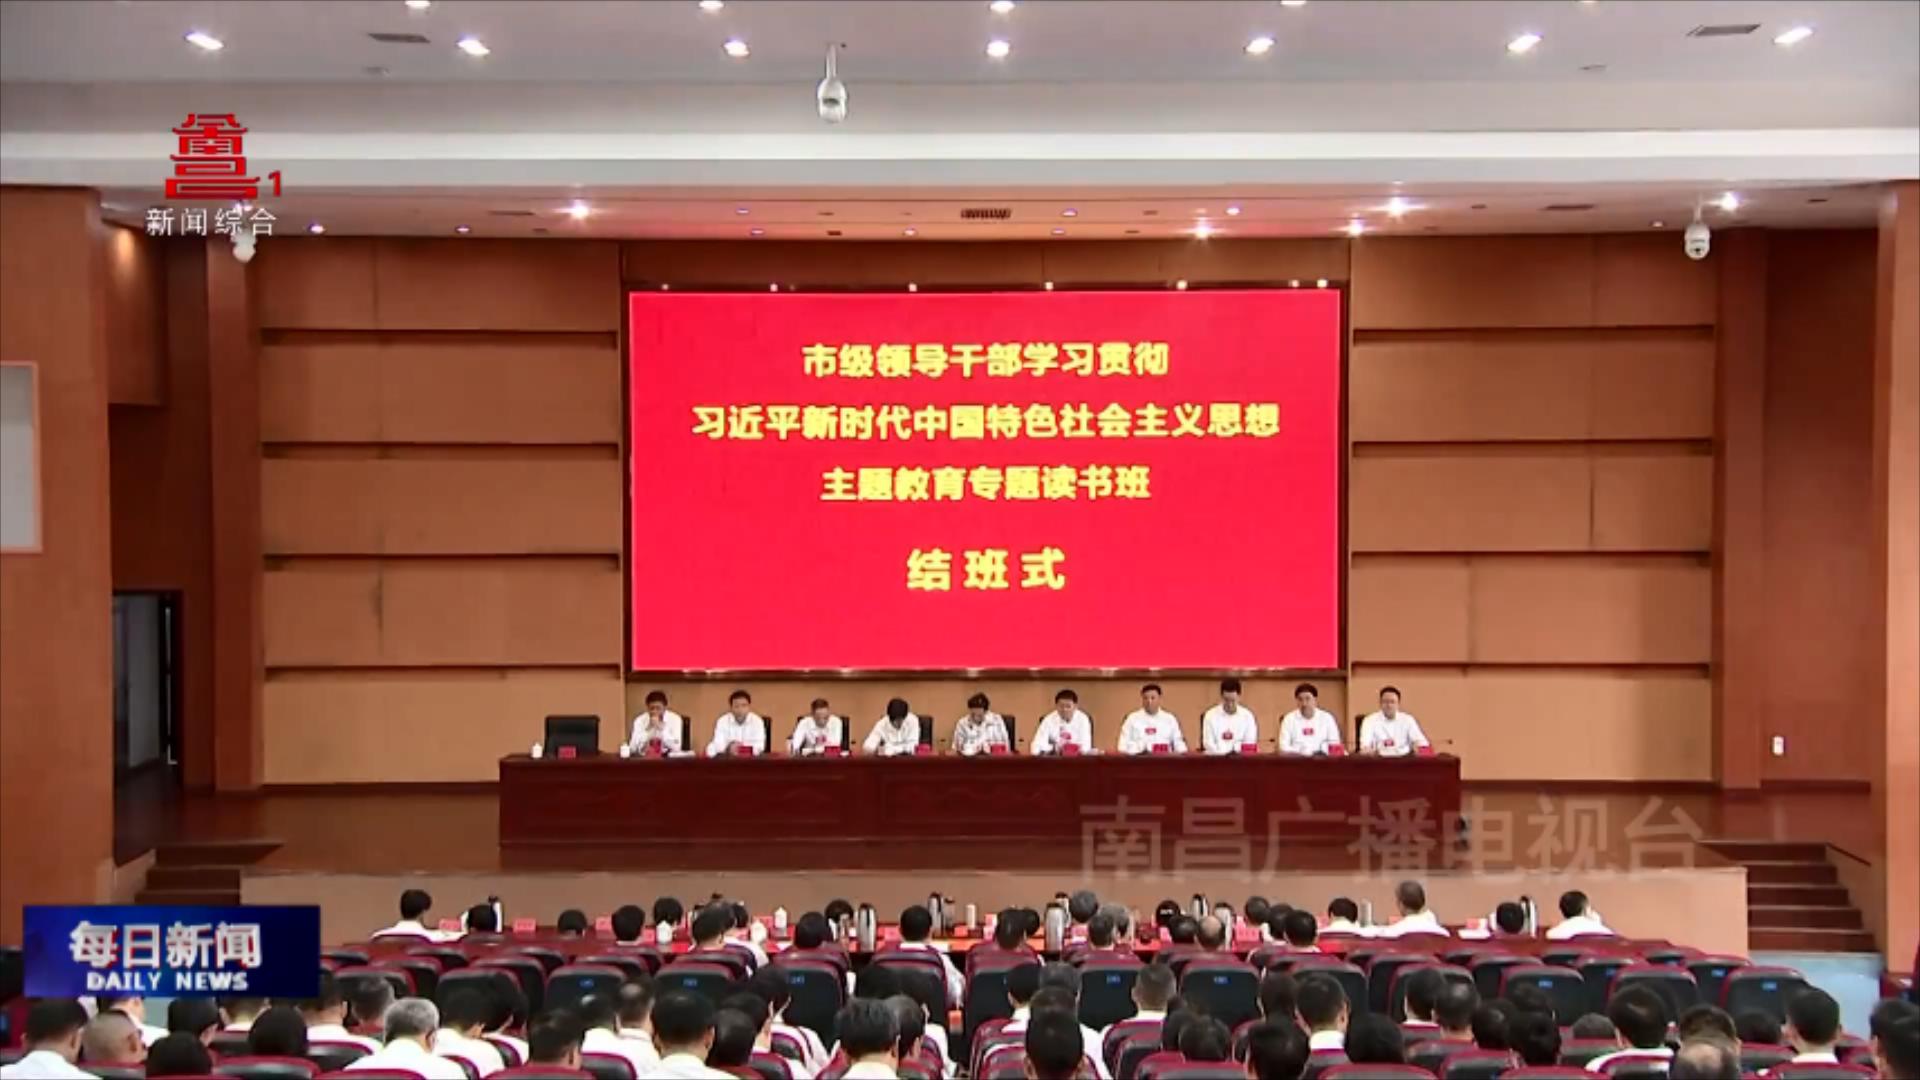 市级领导干部学习贯彻习近平新时代中国特色社会主义思想主题教育专题读书班结班式举行